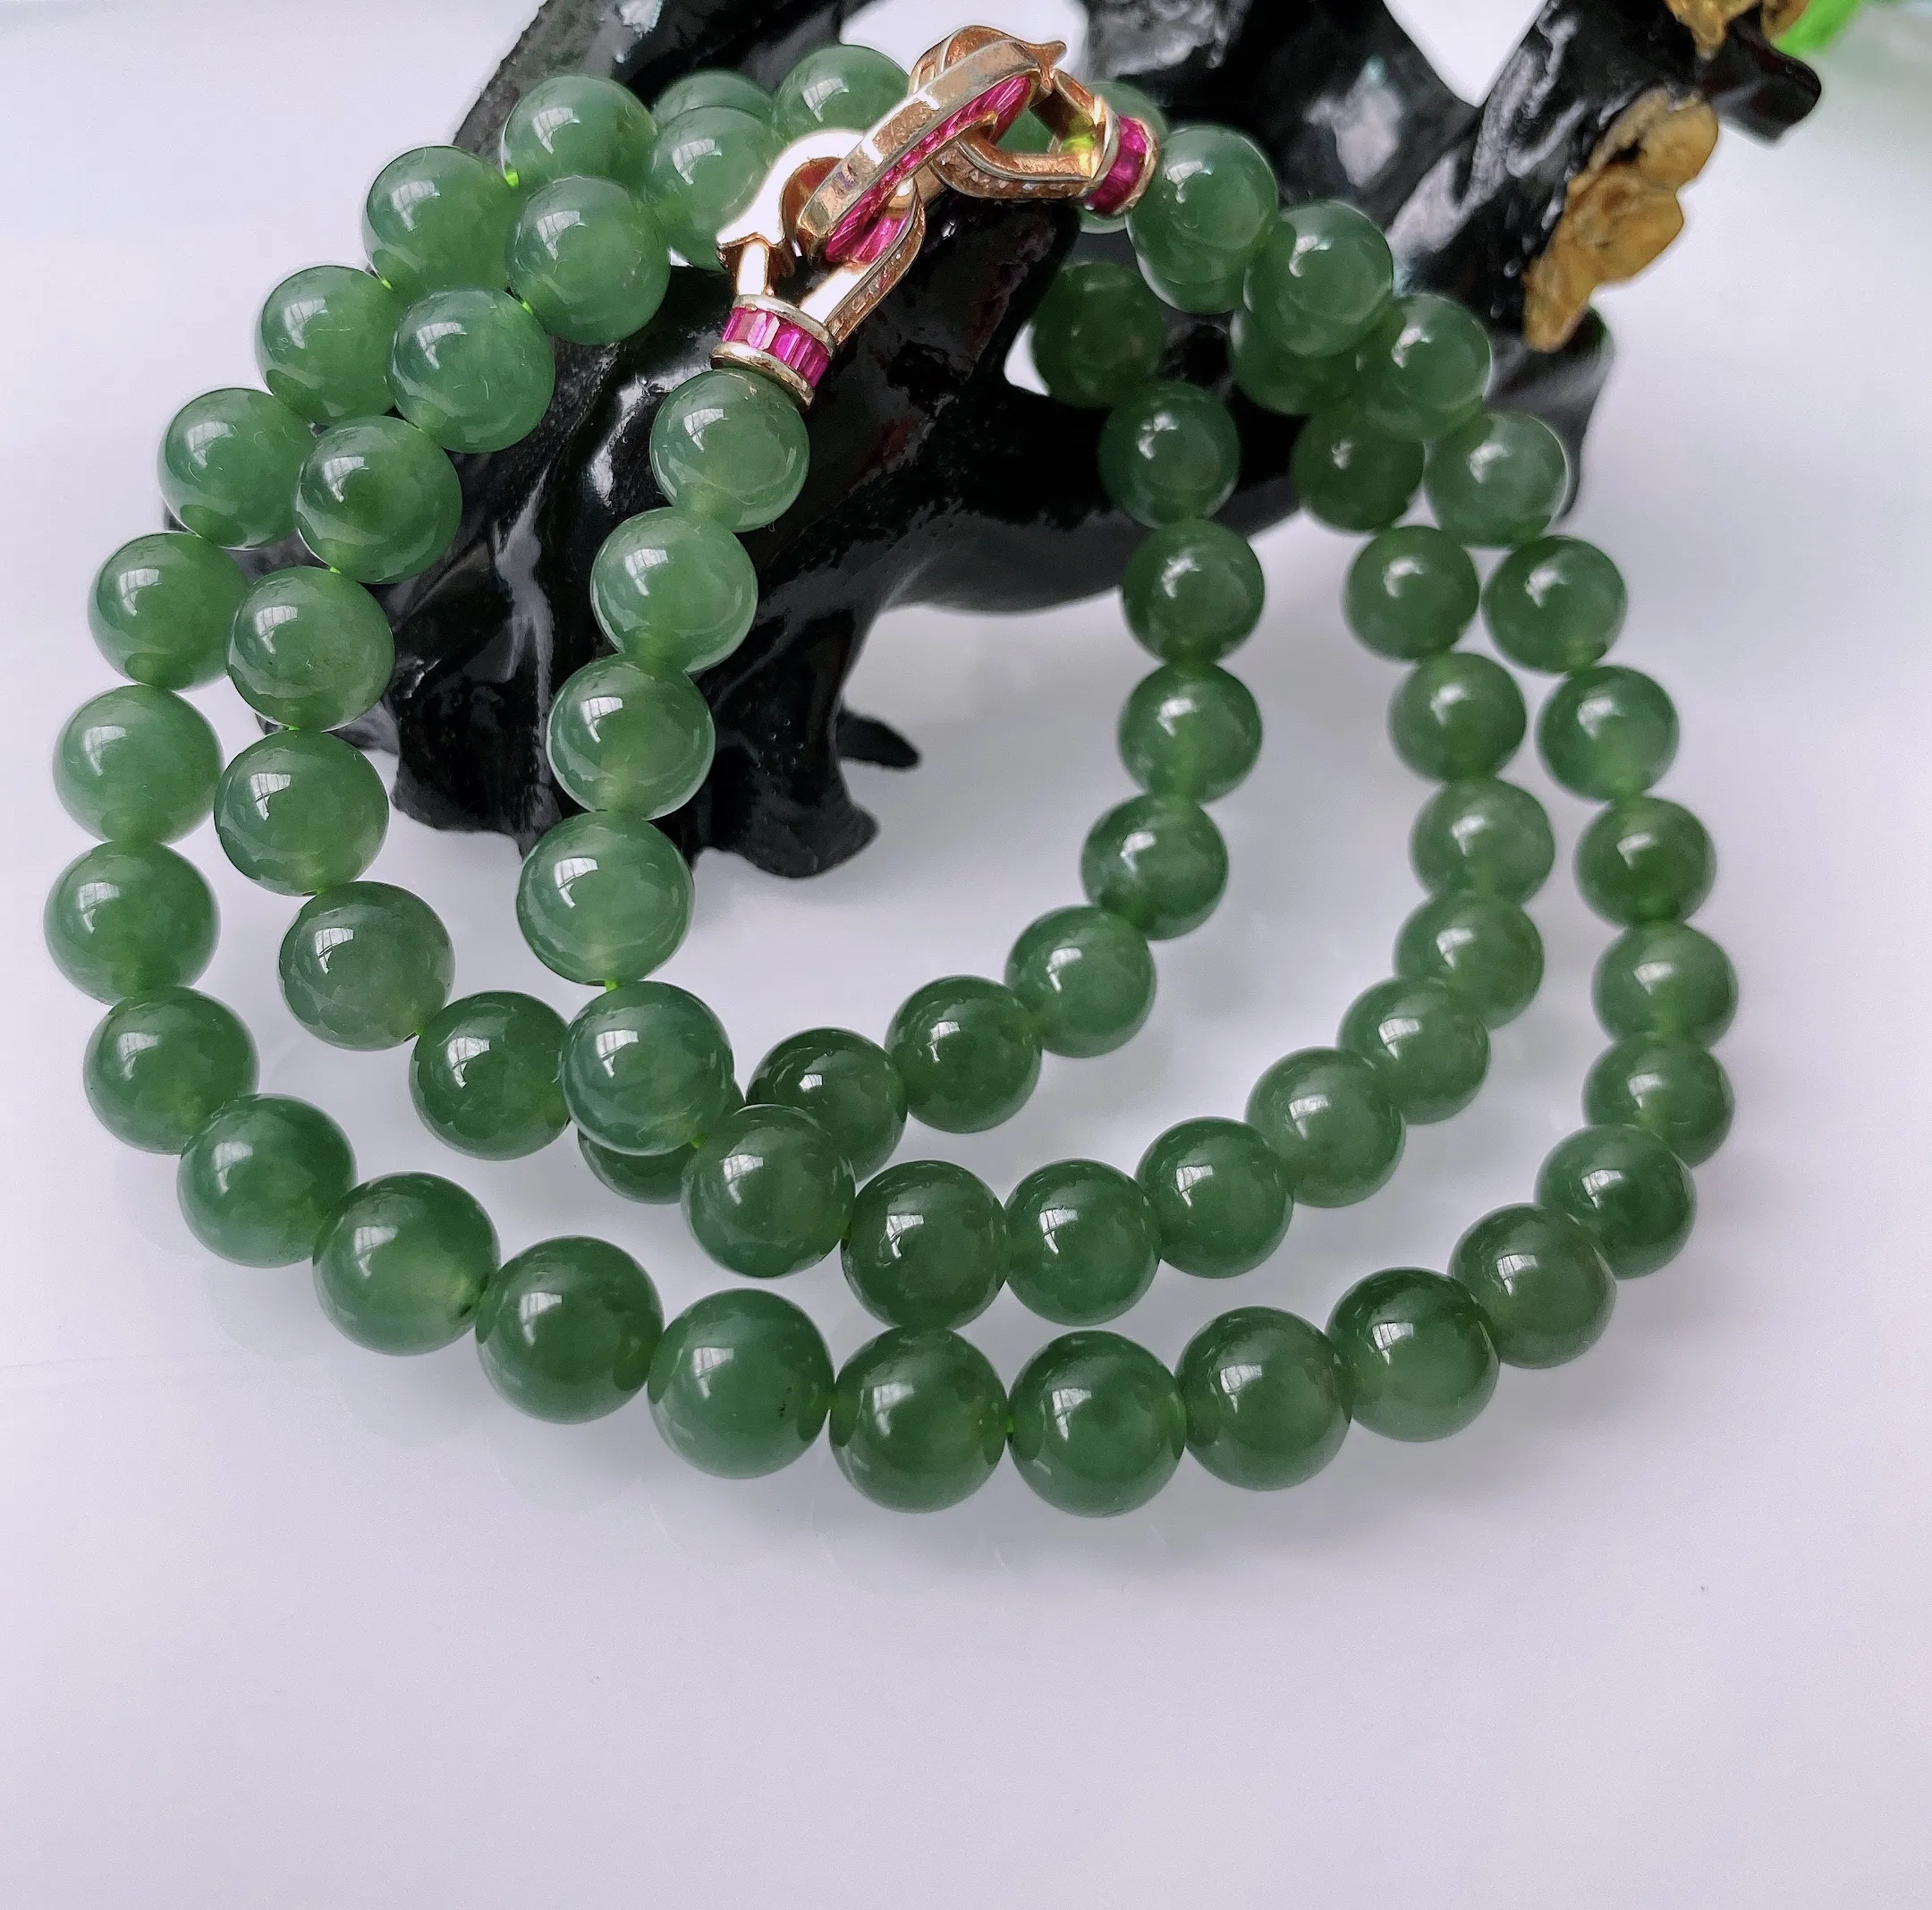 天然A货翡翠 满绿色圆珠项链   大圆珠 翡翠项链 （装饰扣）玉质细腻  冰清玉润  颜色漂亮 取一尺寸8.1mm  #41635068